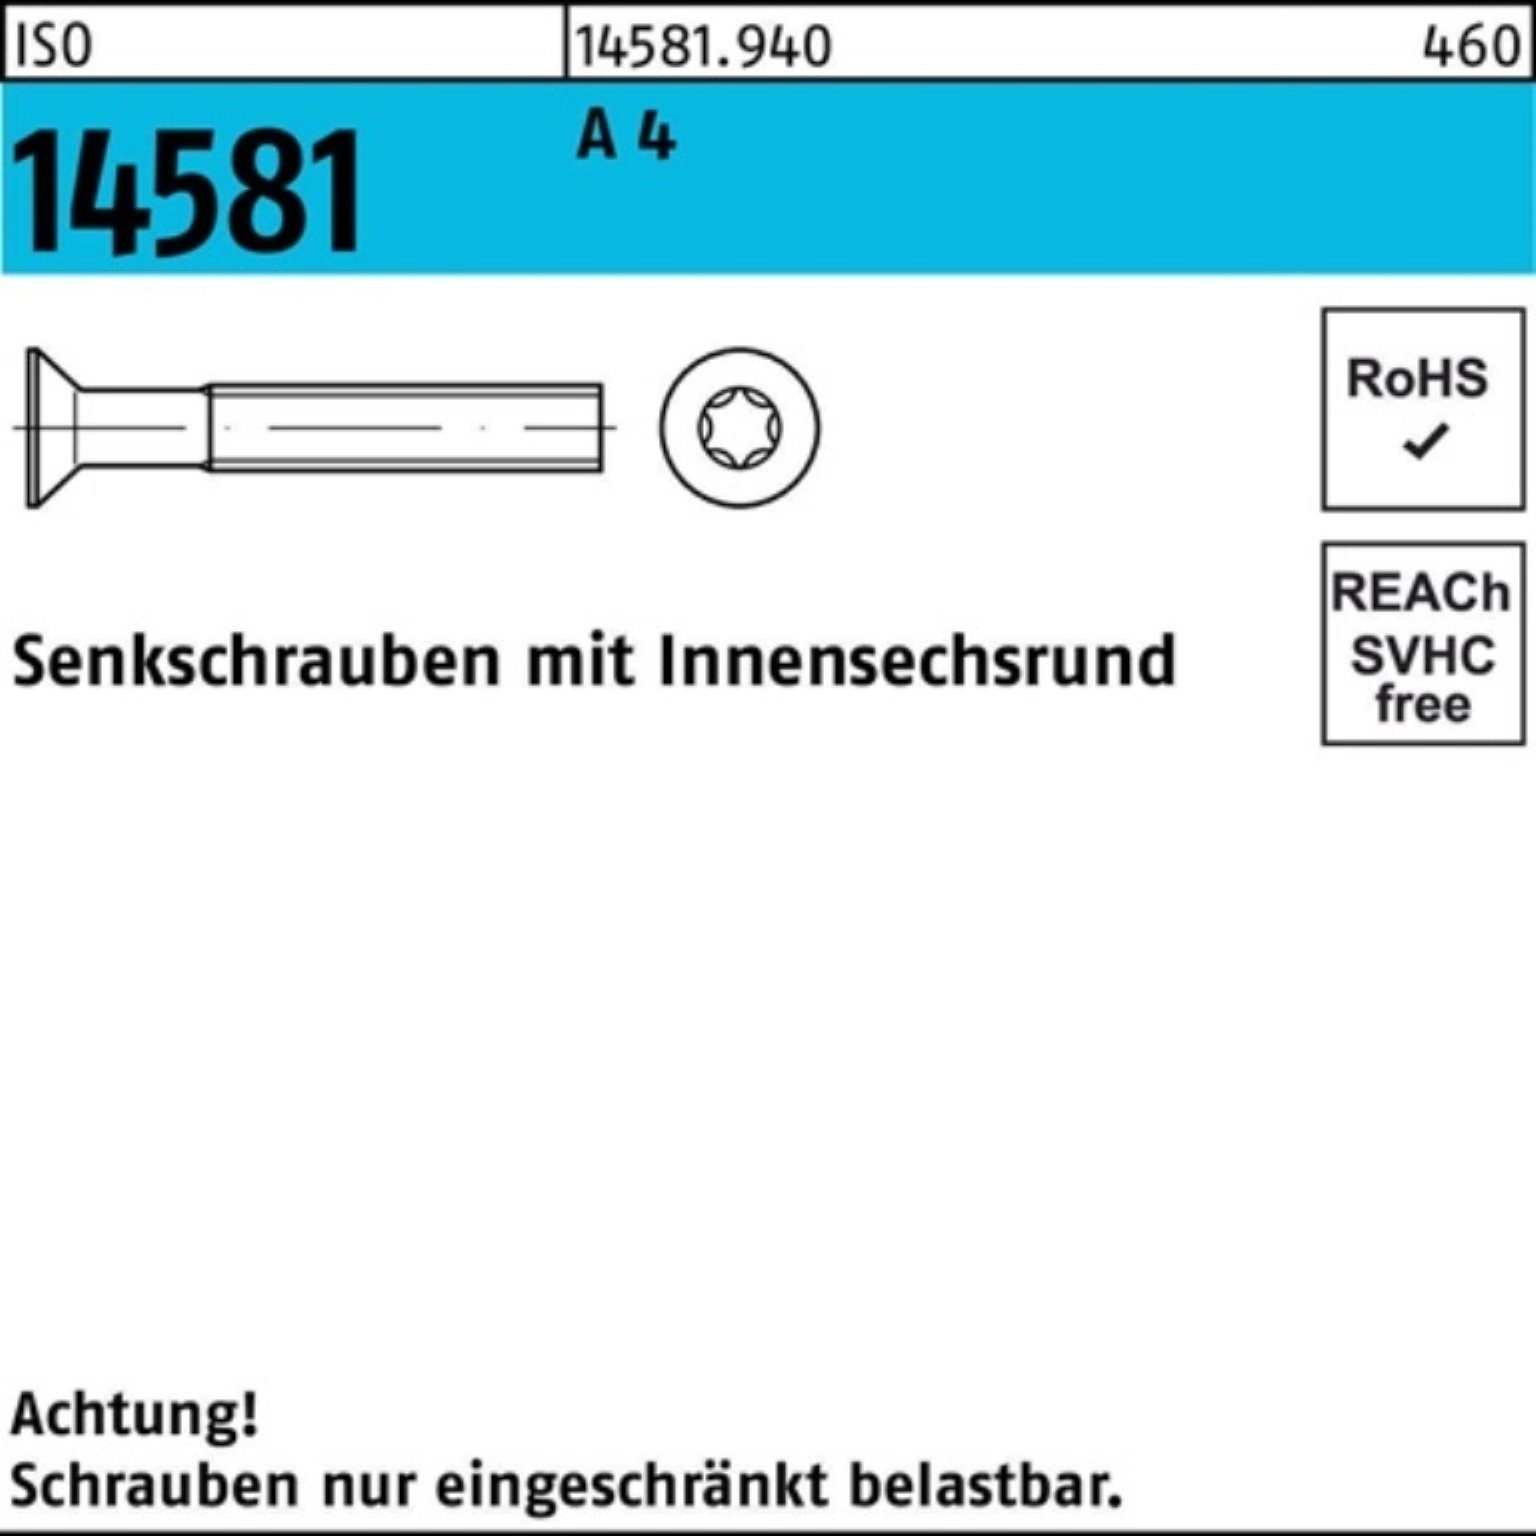 ISO Reyher Senkschraube ISR M6x 14 200er 14581 T30 Stück 200 Senkschraube 25 ISO 4 A Pack